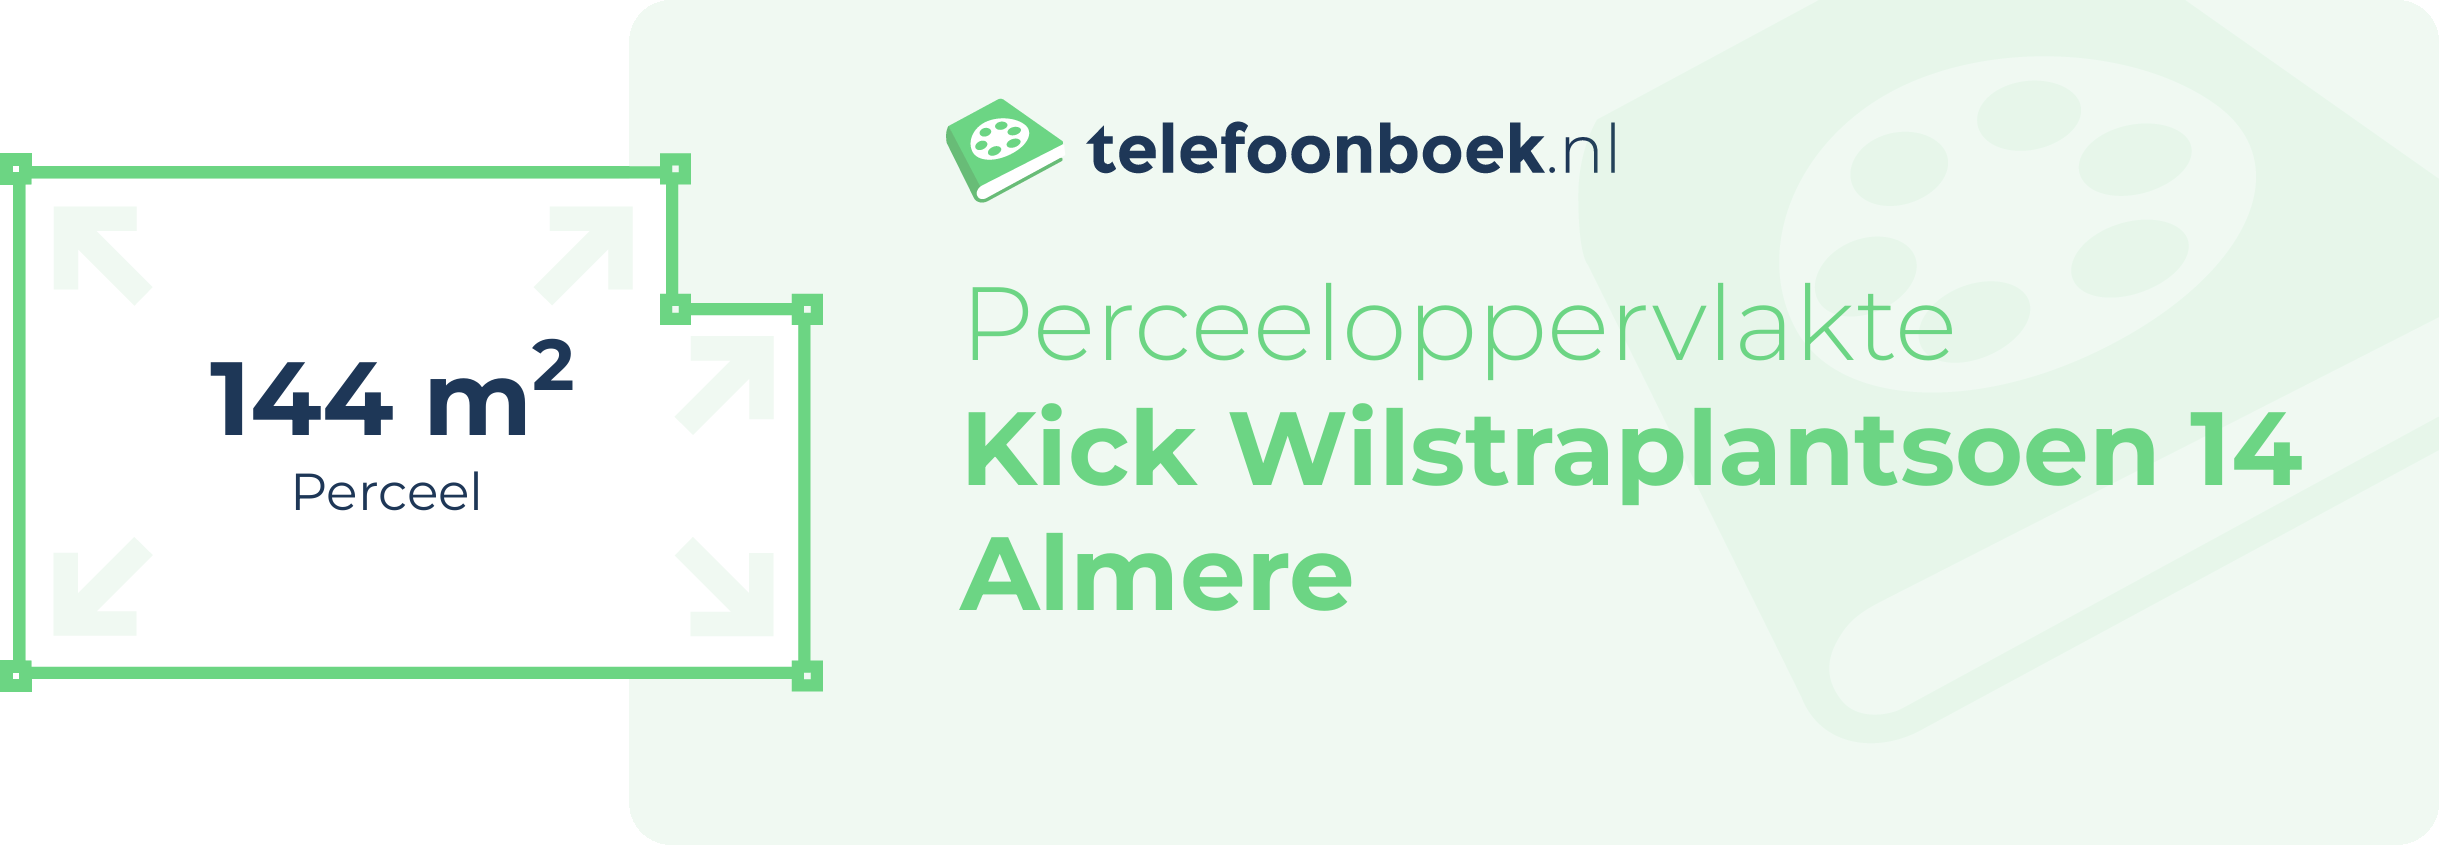 Perceeloppervlakte Kick Wilstraplantsoen 14 Almere